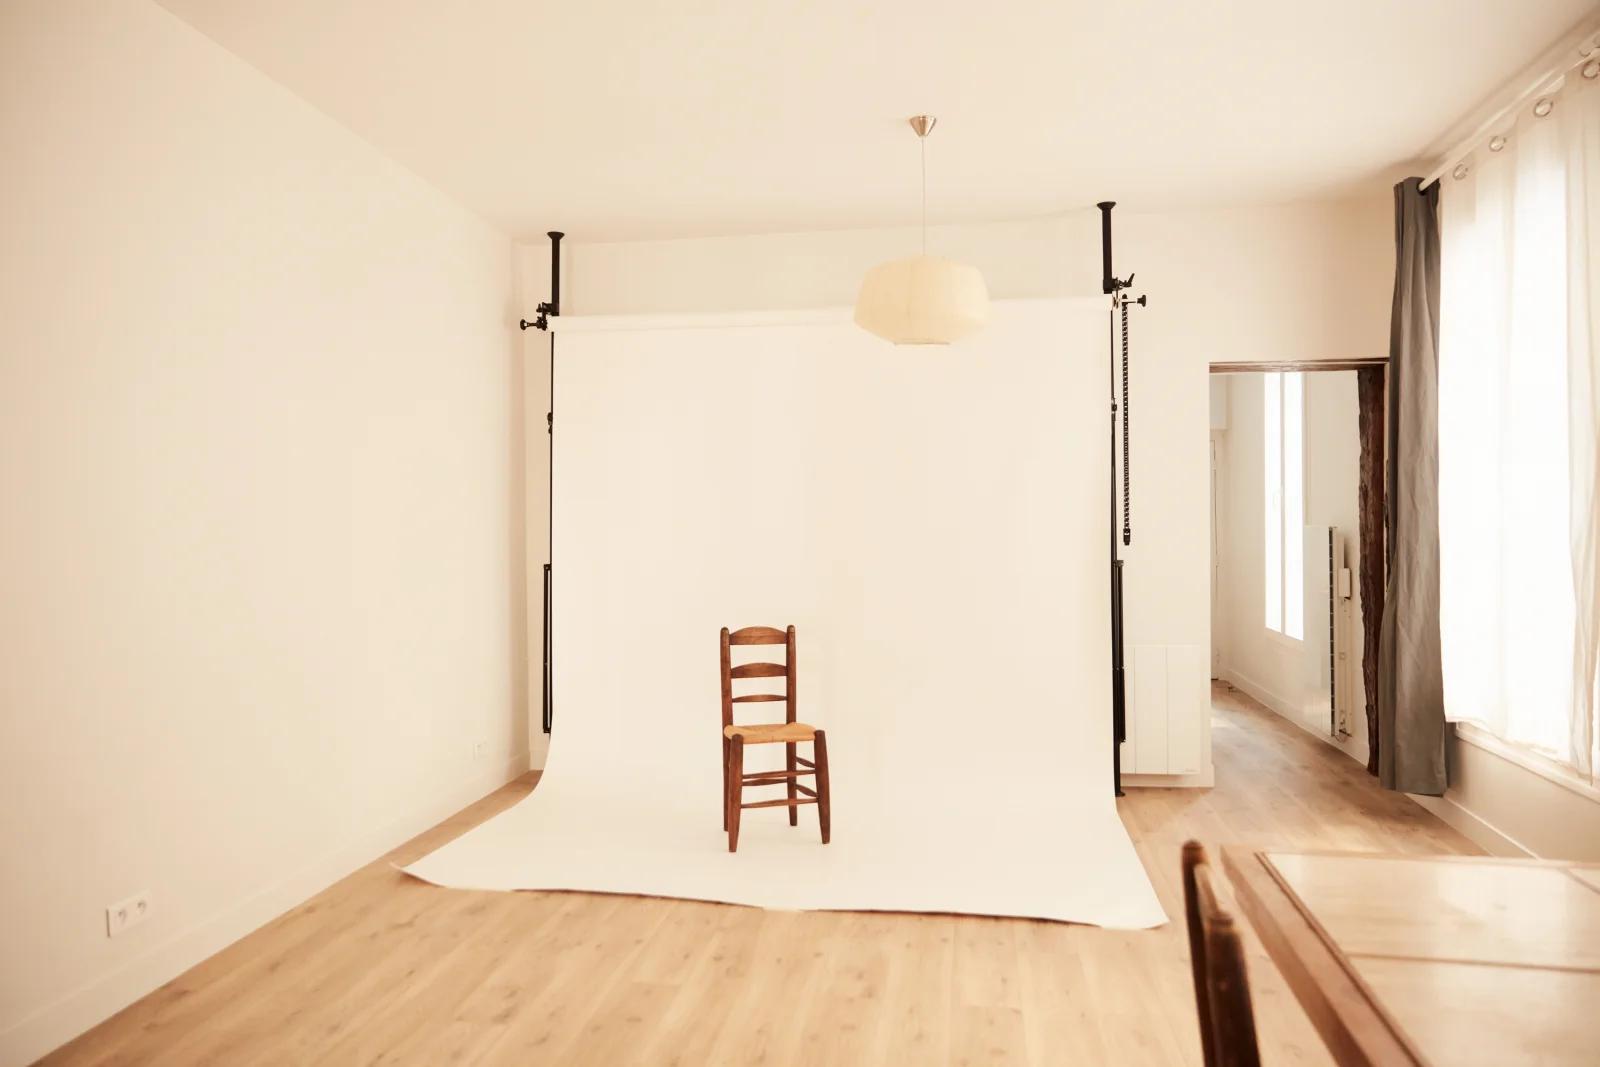 Dormitorio dentro El estudio de un fotógrafo con un estilo despejado - 1